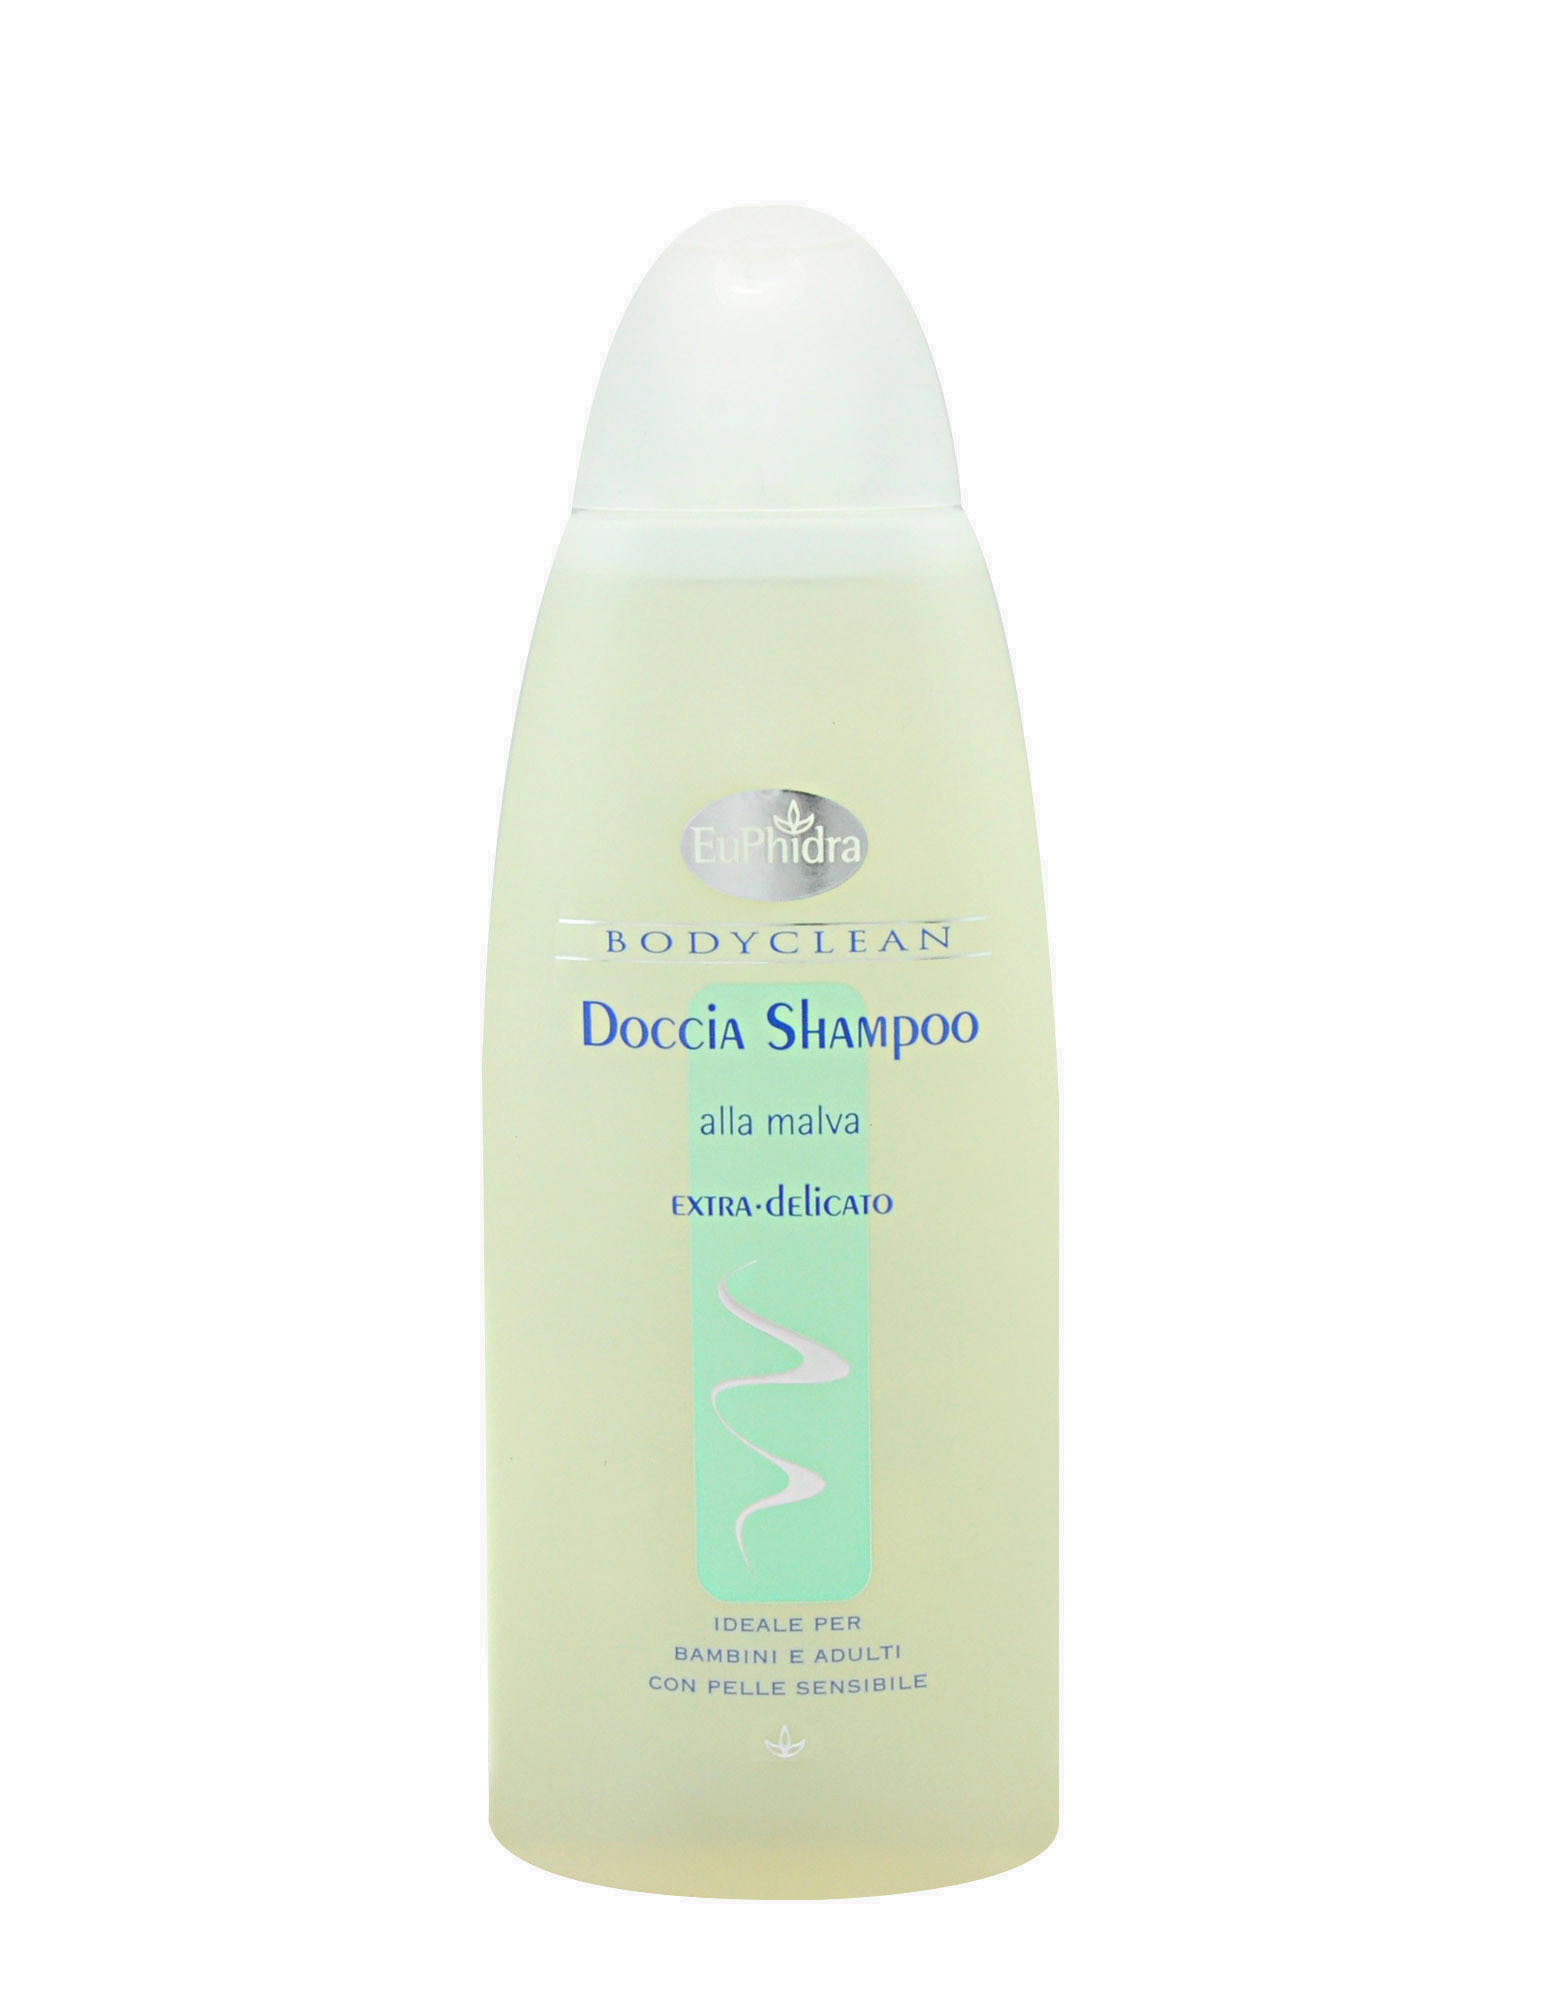 Bodyclean - Doccia Shampoo alla Malva di Euphidra, 250ml 